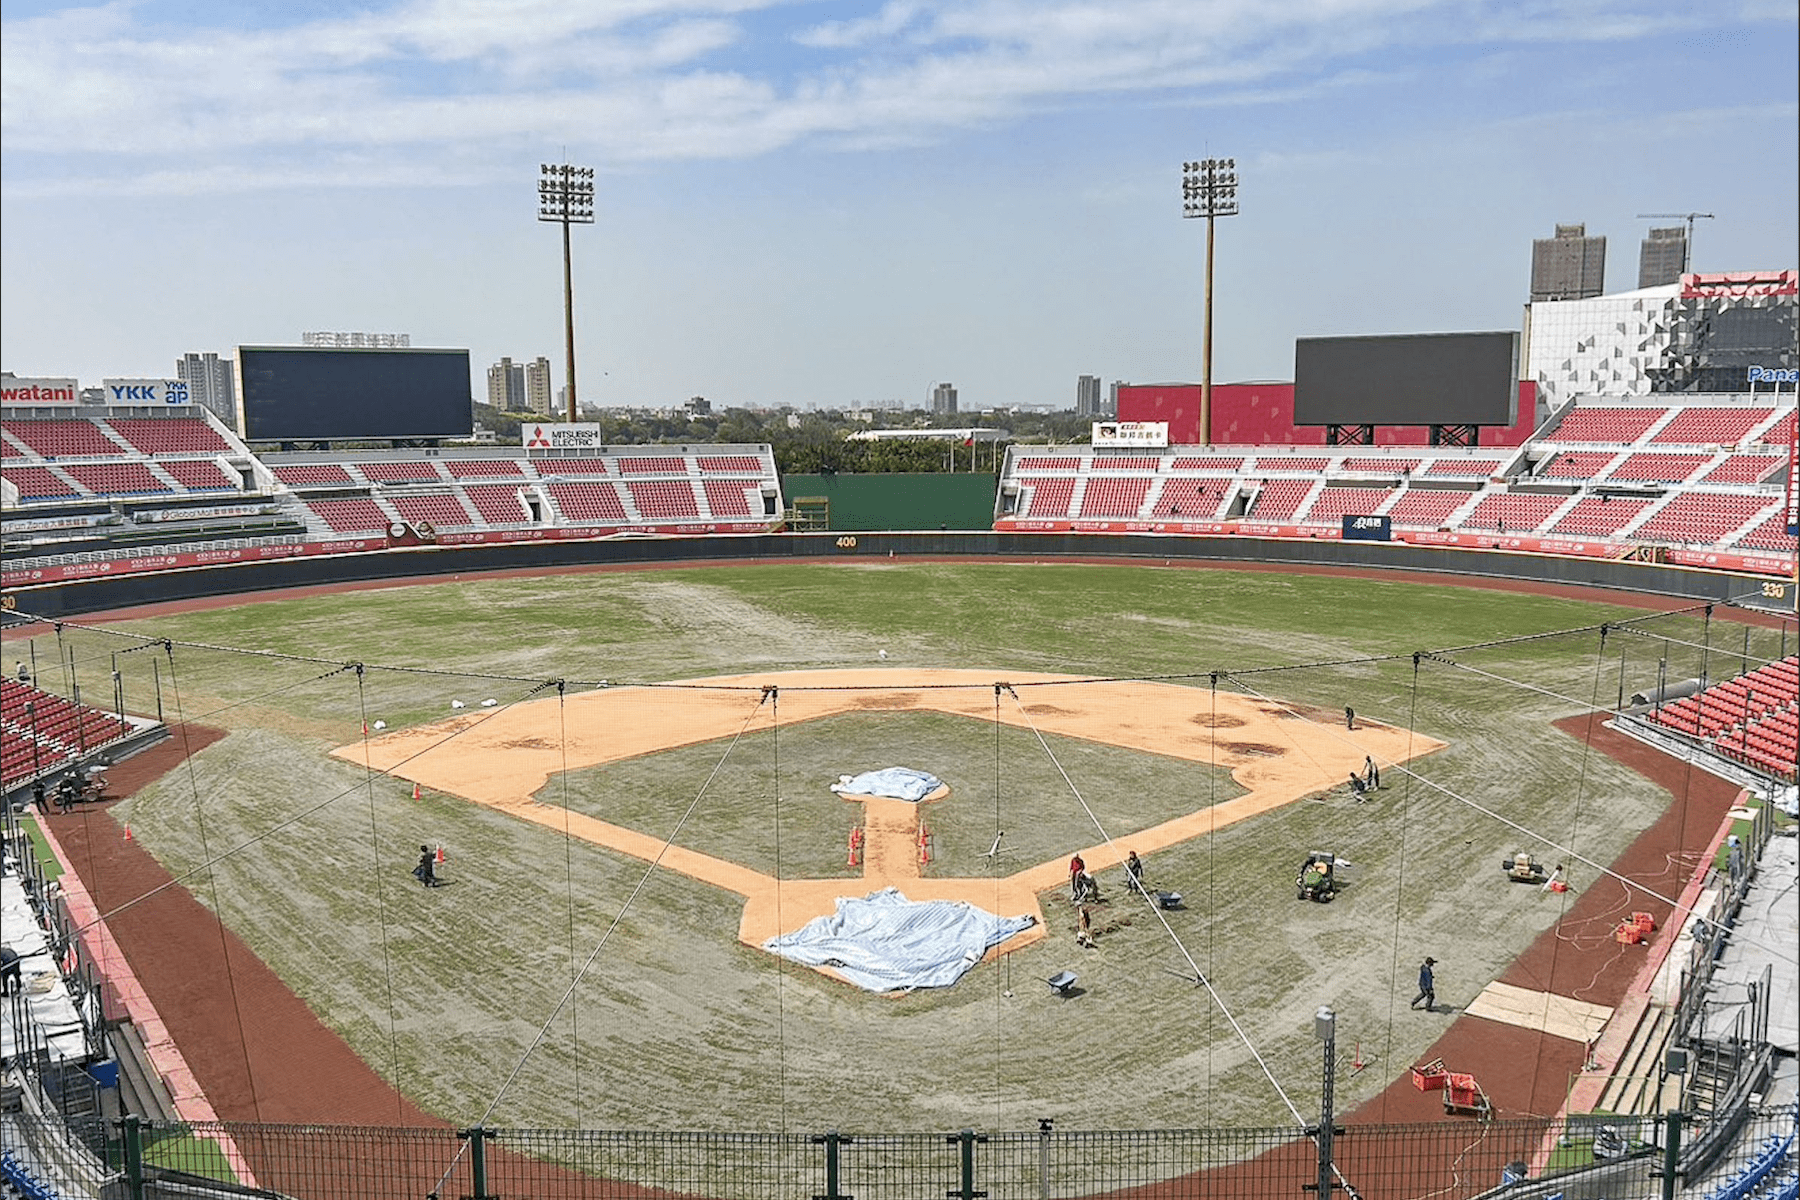 樂天桃園國際棒球場改善工程進度近9成      美日韓技師協助鋪設紅土